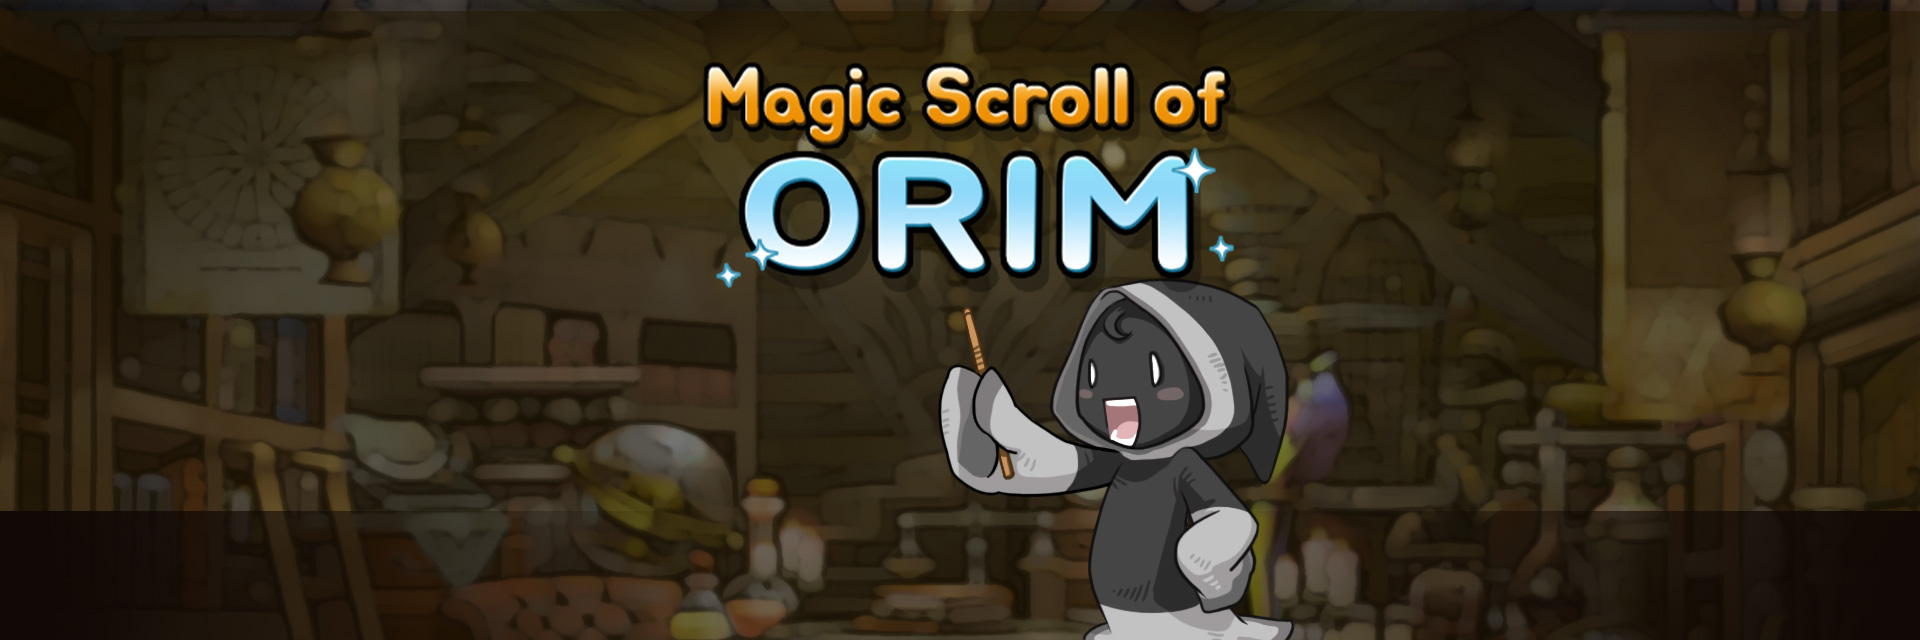 Magic Scroll of ORIM